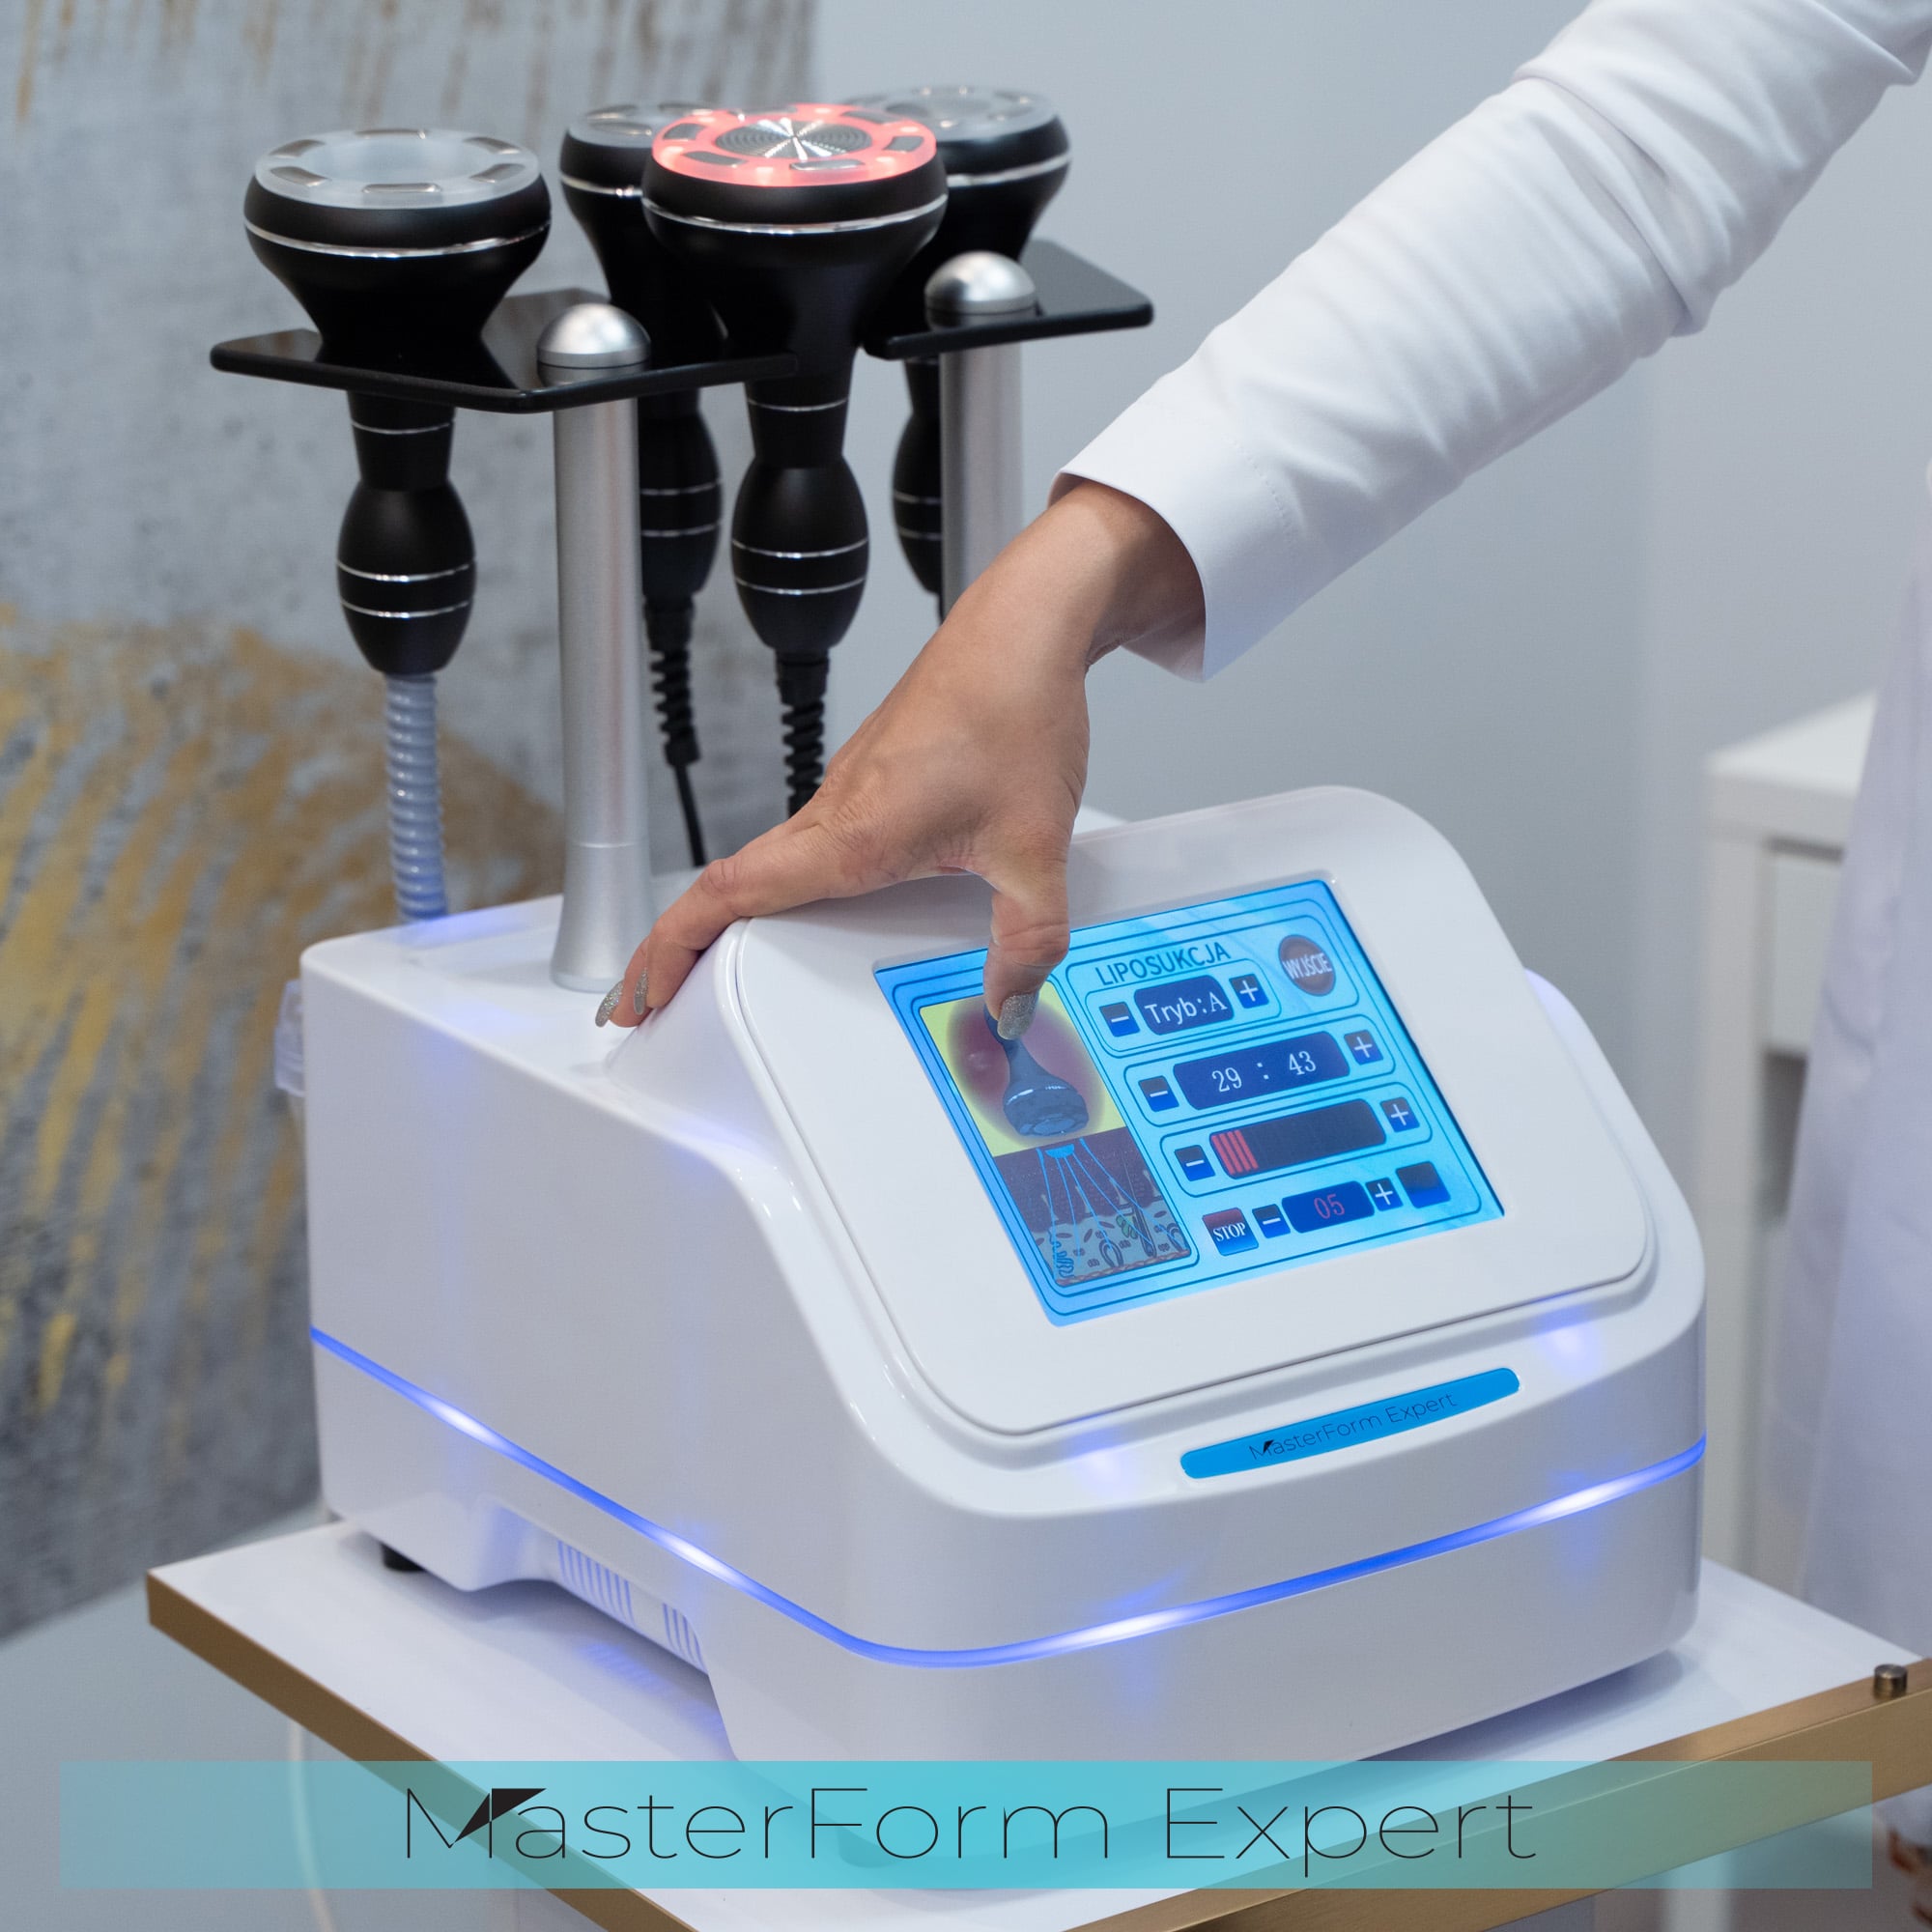 Maszyna MasterForm Expert posiada duży ekran dotykowy, który wyświetla dostępne opcje dla wybranej procedury